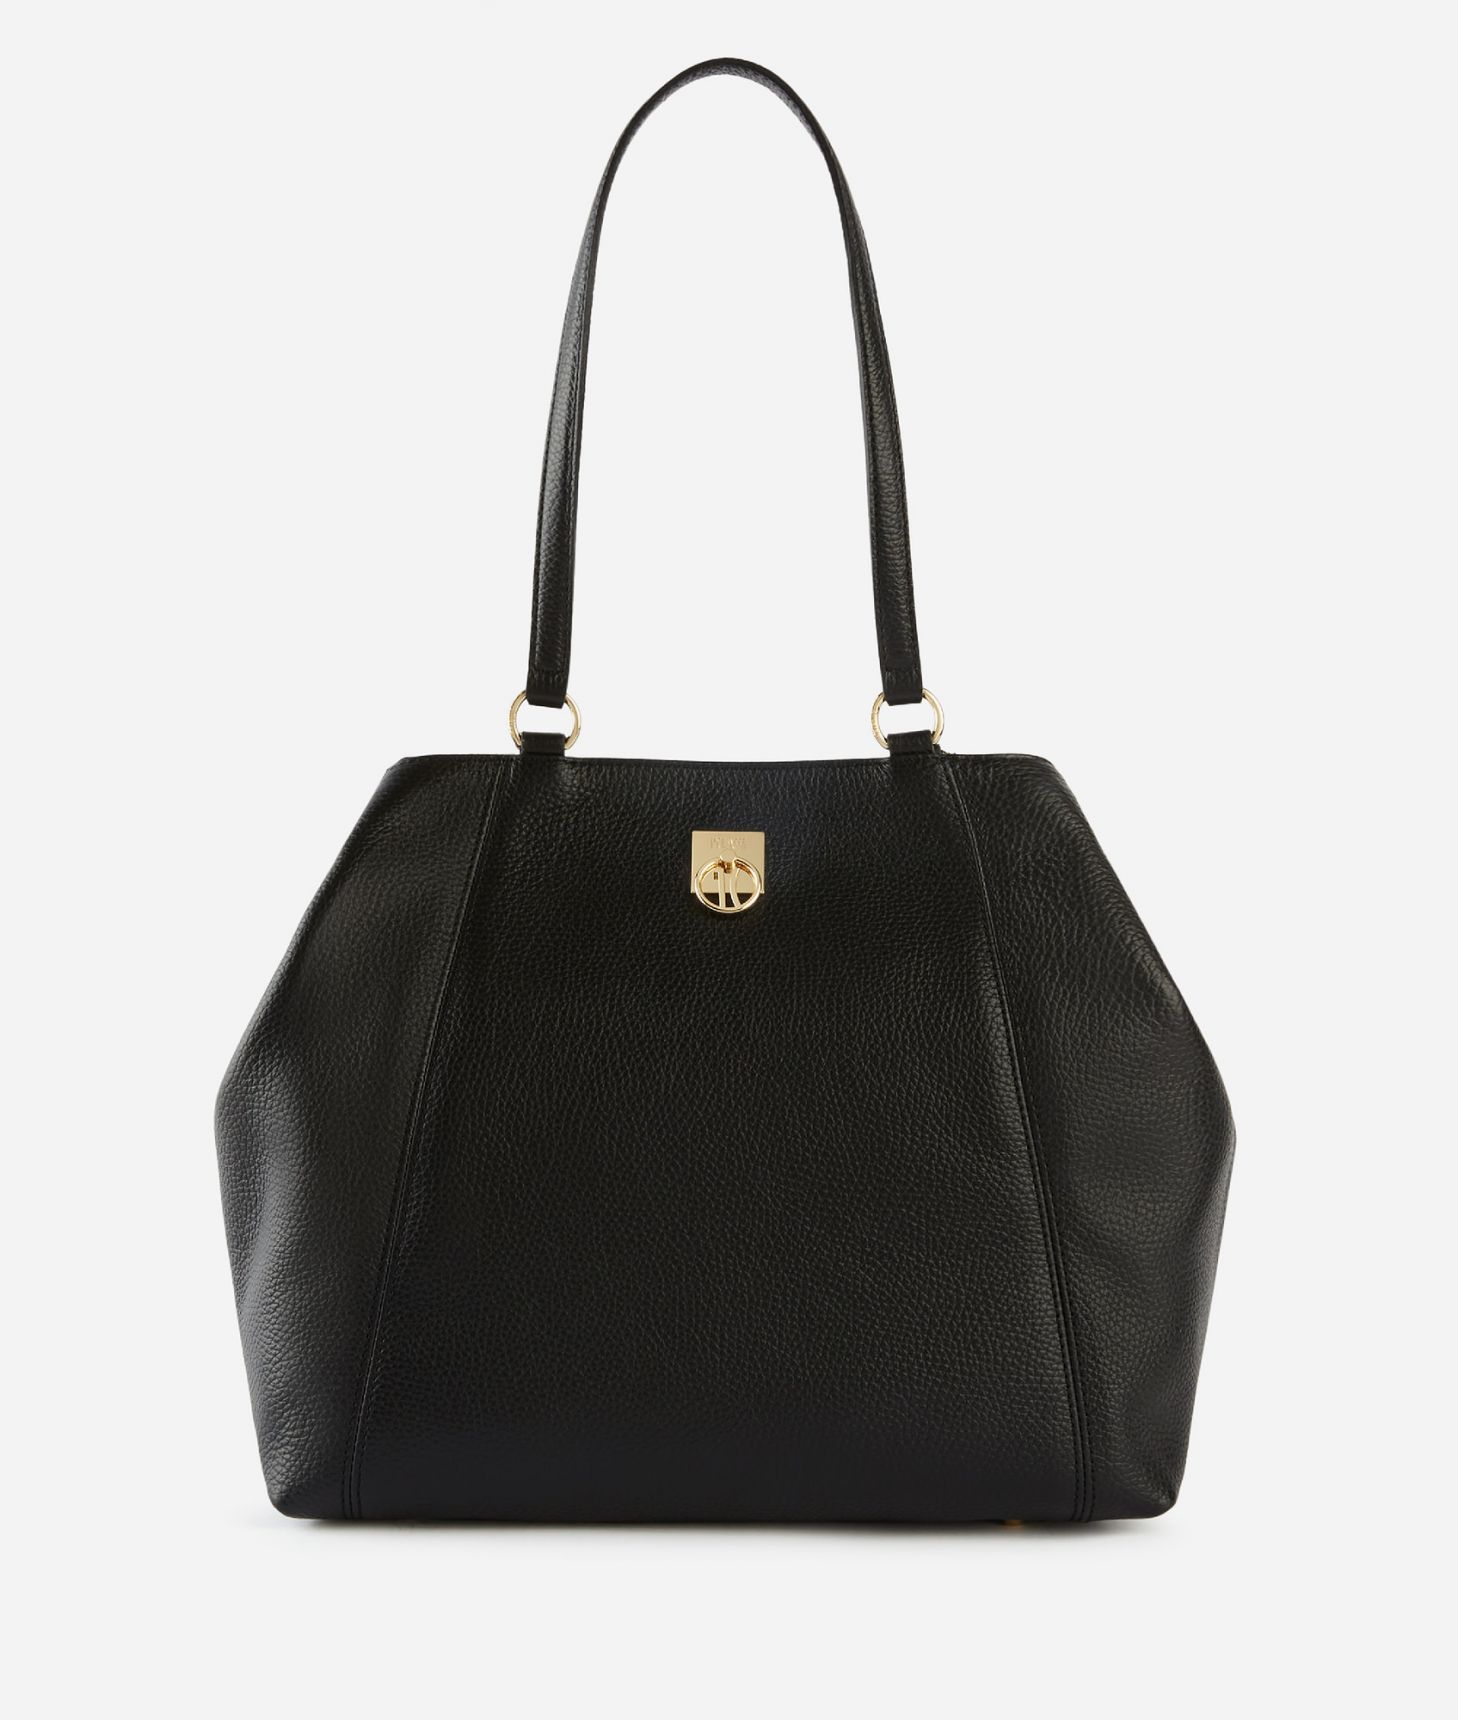 Deco Coast shopper bag Black,front